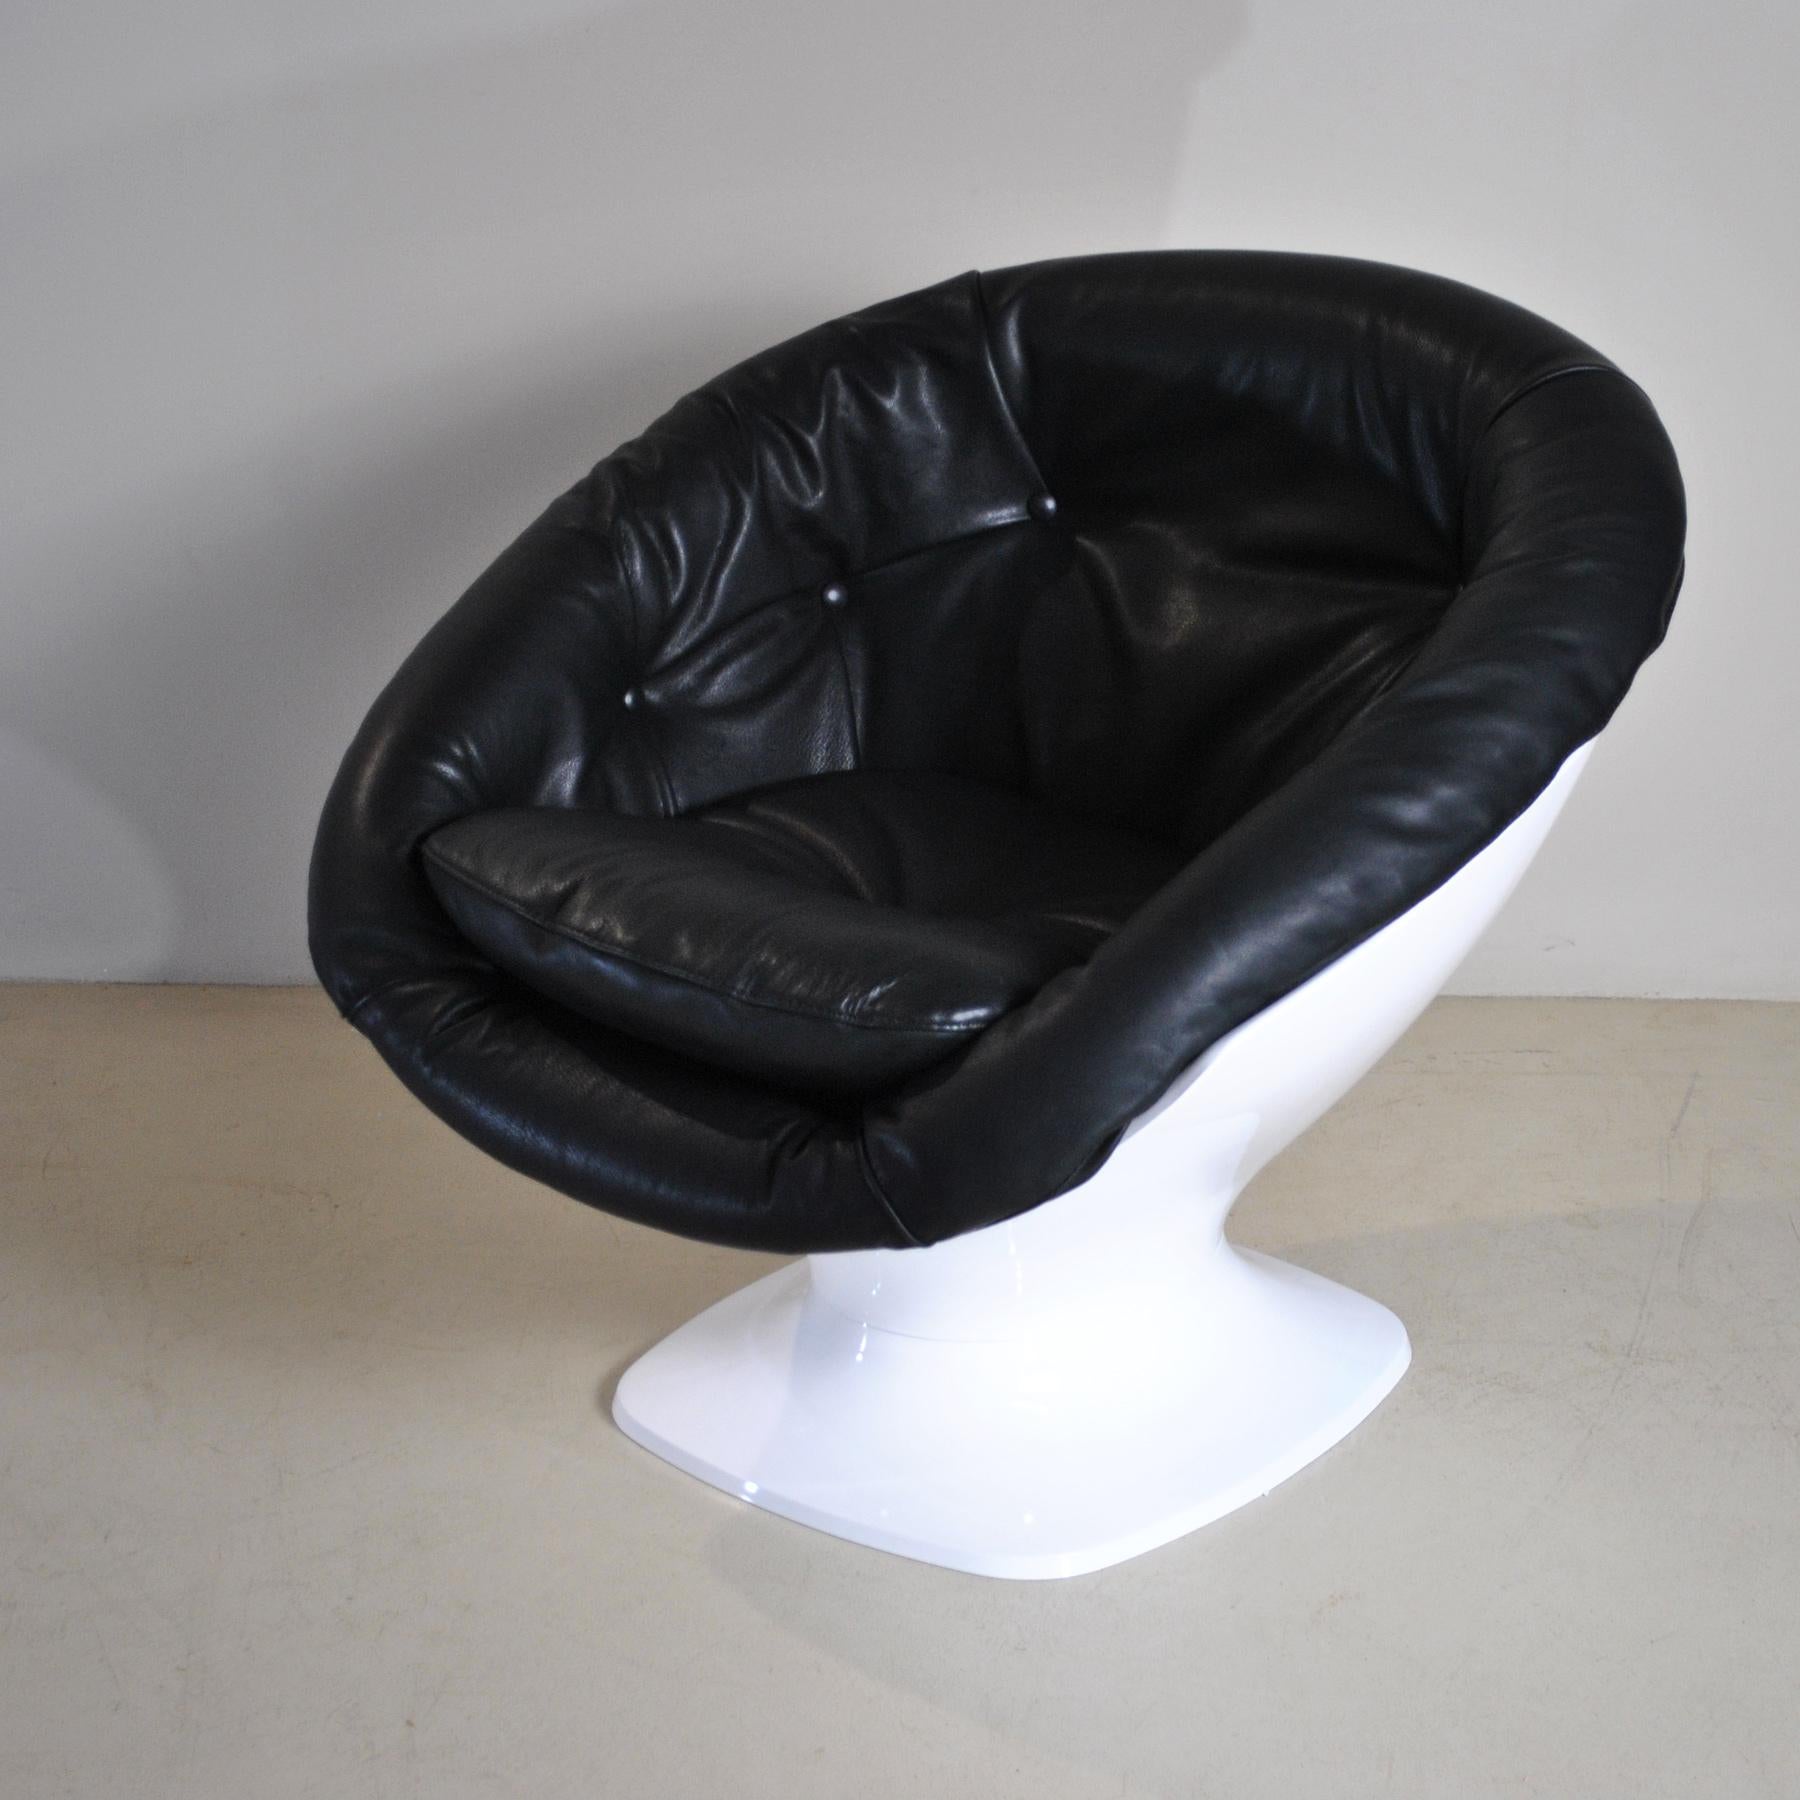 Fauteuil club en plastique conçu par Raphael Raffel produit en France dans les années 70 en style tulipe avec siège arrondi, recouvert de cuir noir.